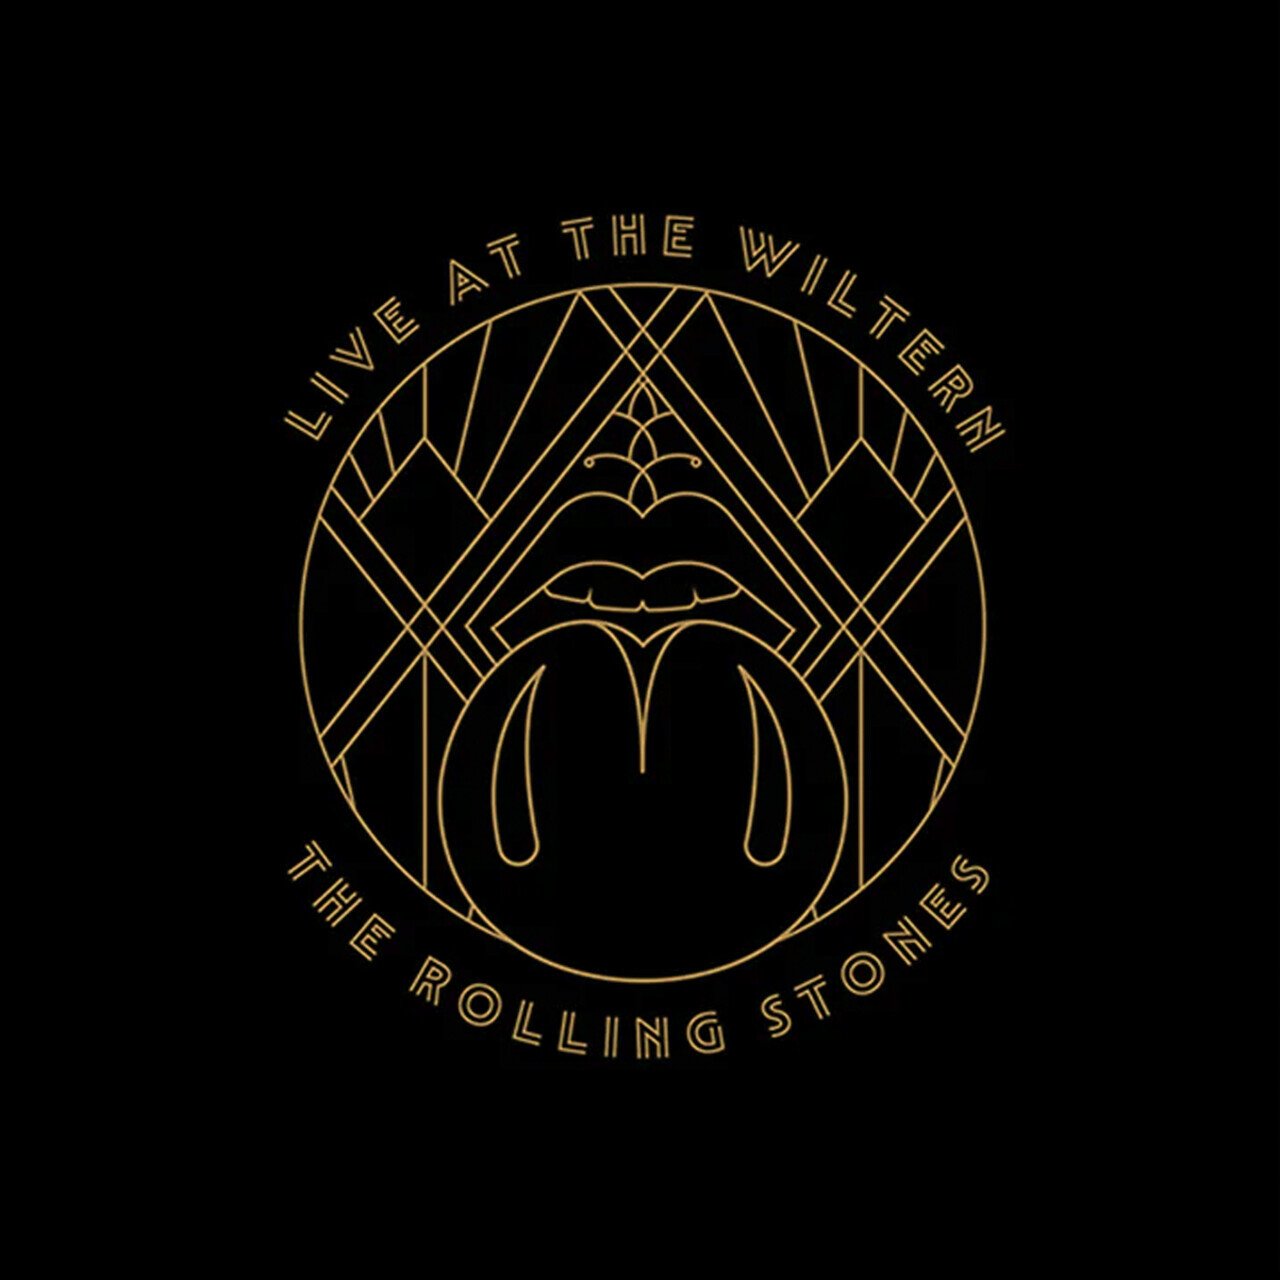 Рок Universal (Aus) Rolling Stones, The - Live At The Wiltern (Black Vinyl 3LP) виниловая пластинка rolling stones the the rolling stones in mono 0018771208112